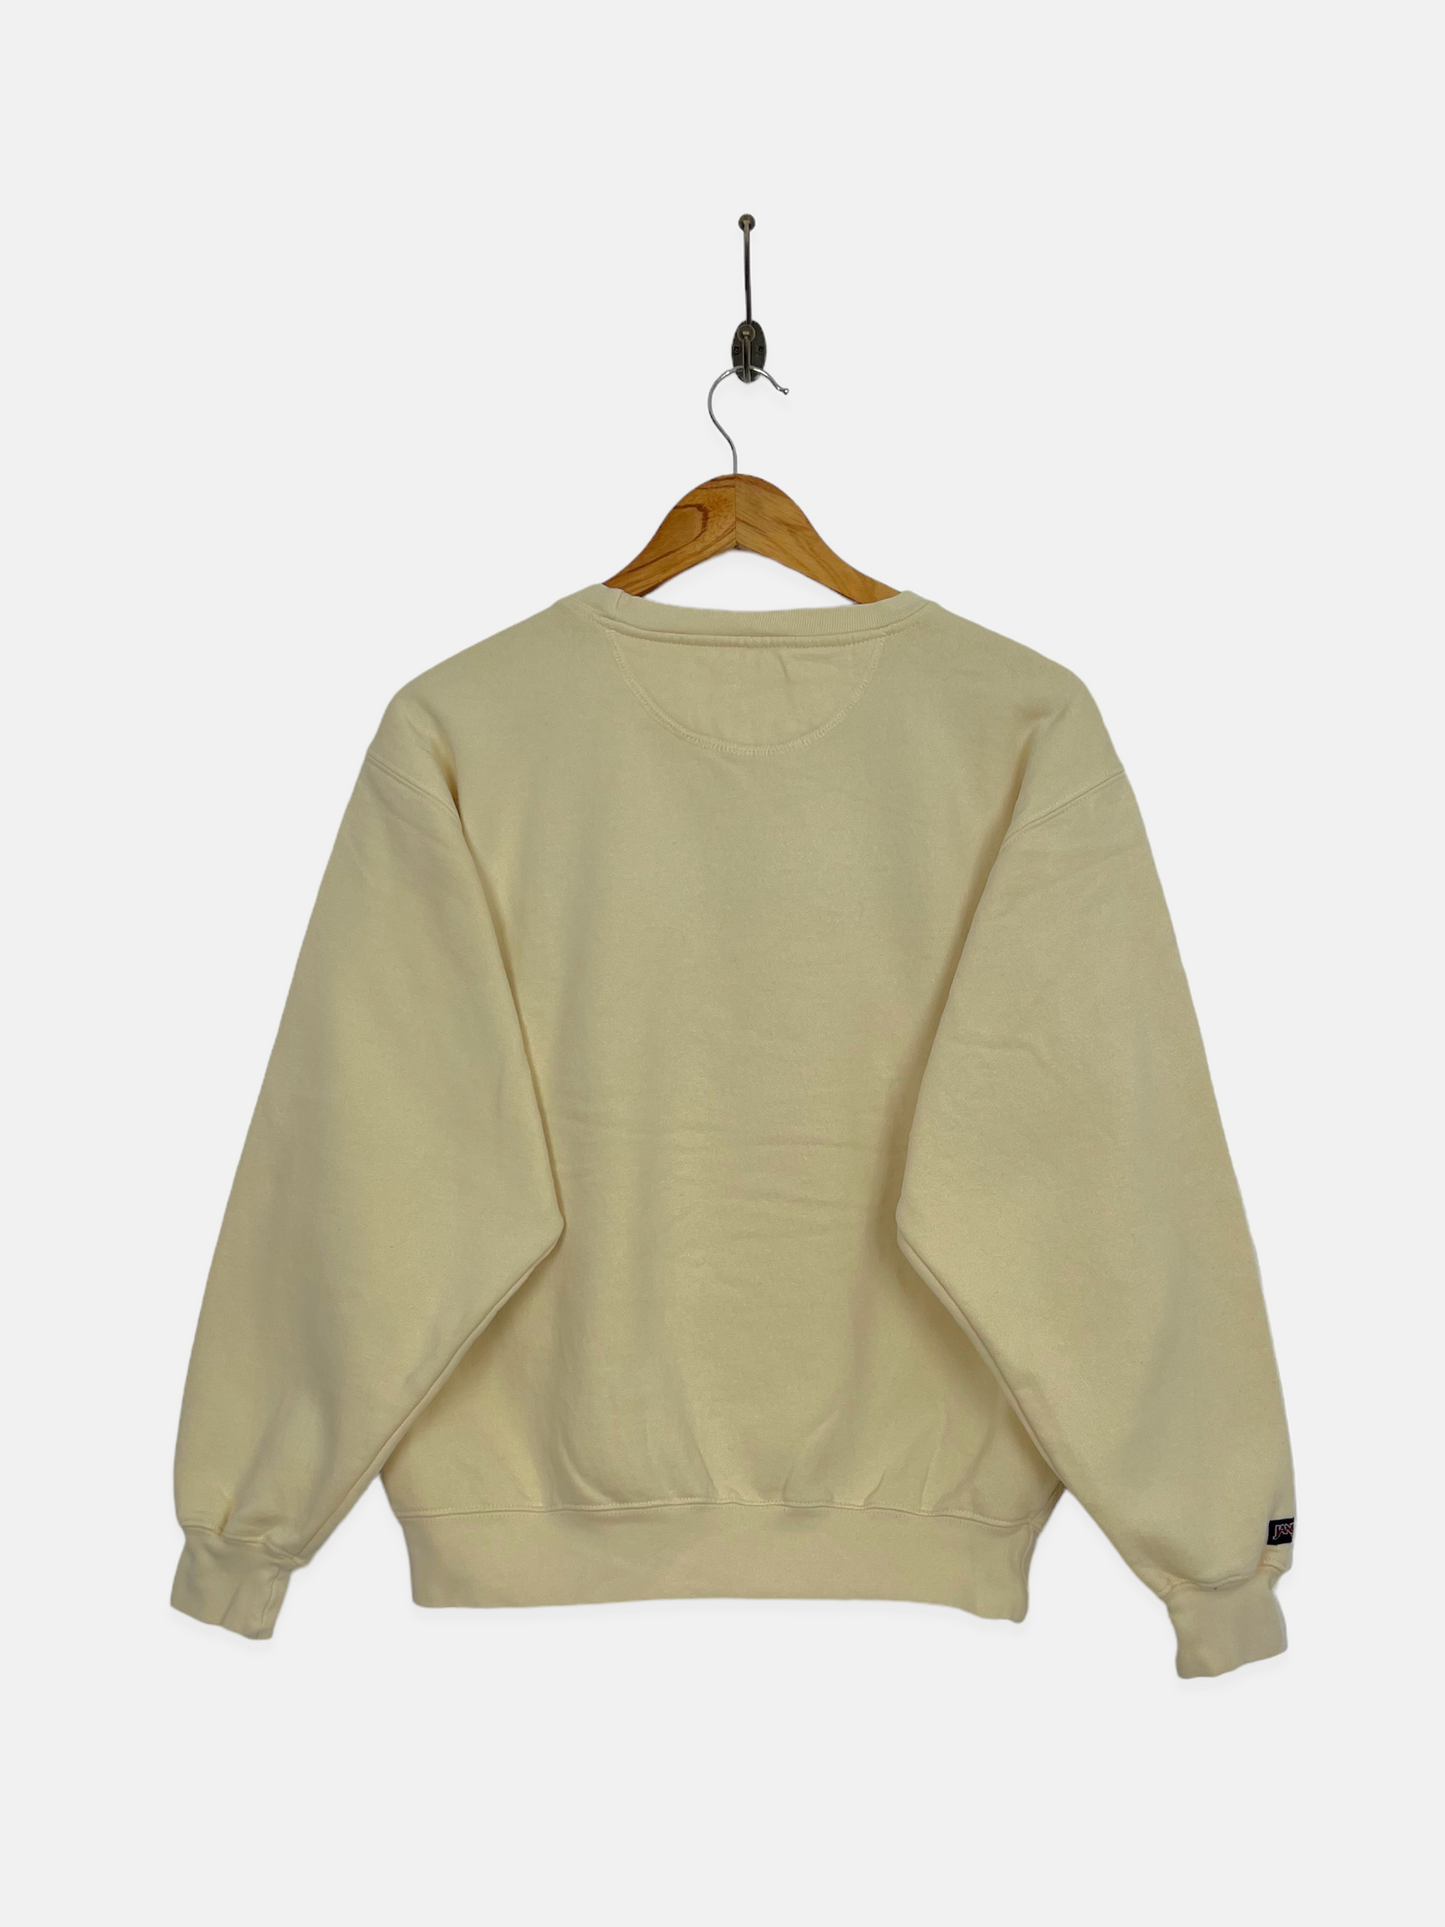 90's Notre Dame Embroidered Jansport Vintage Sweatshirt Size 8